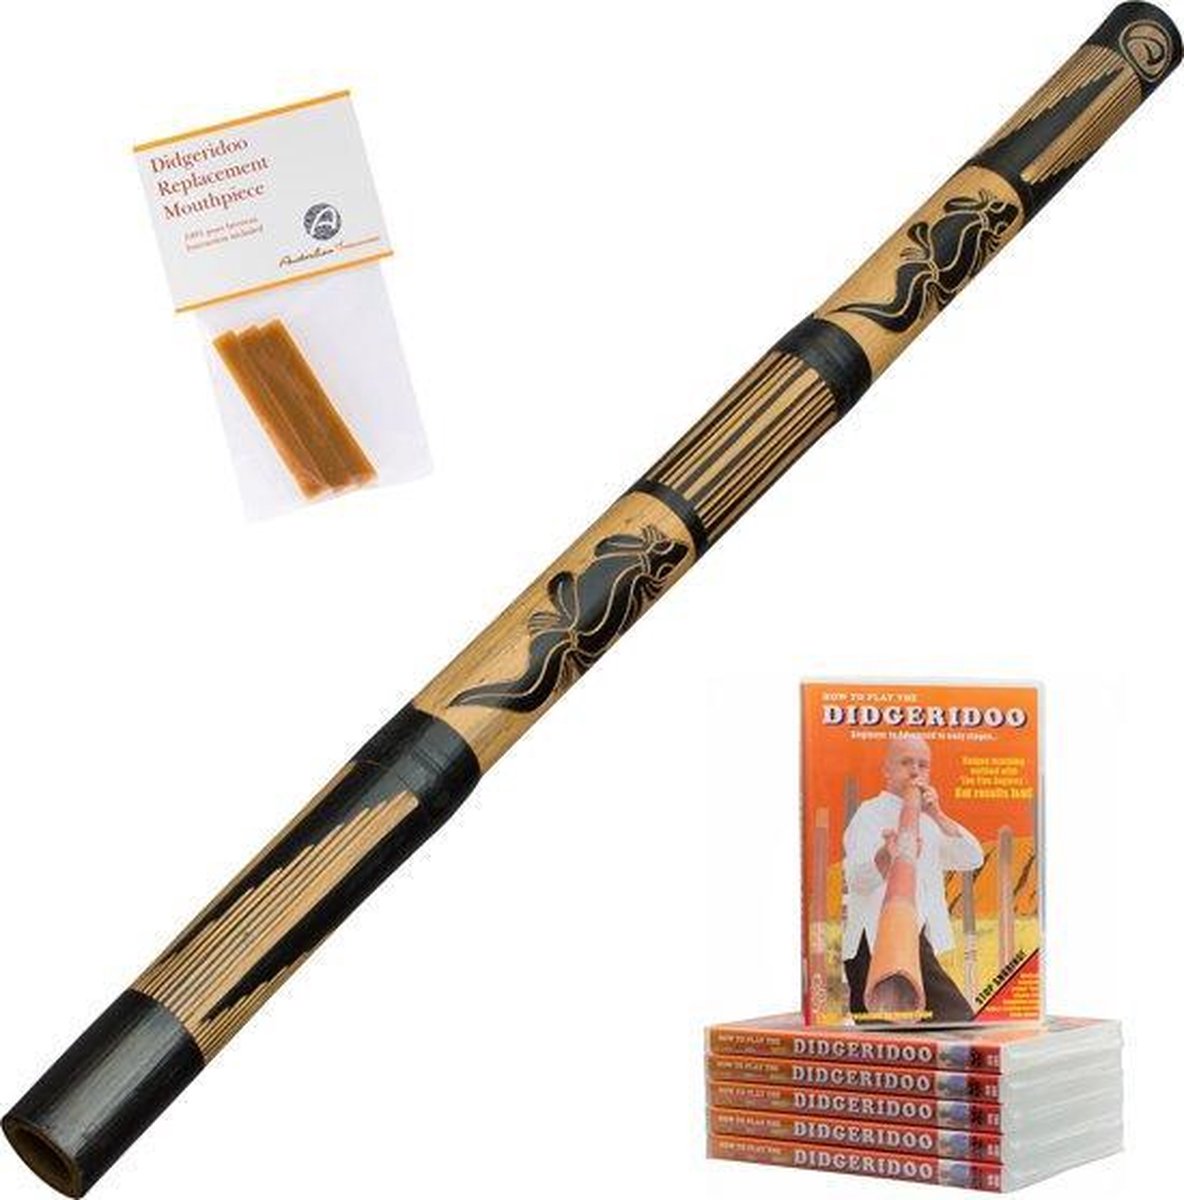 Didgeridoo leren spelen is niet moeilijk! Bamboe didjeridoo 120cm inclusief lesvideo (85 min. engels gesproken), inclusief imker bijenwas | Didgeridoospelen werkt tegen snurken en apneu | bekijk de video!